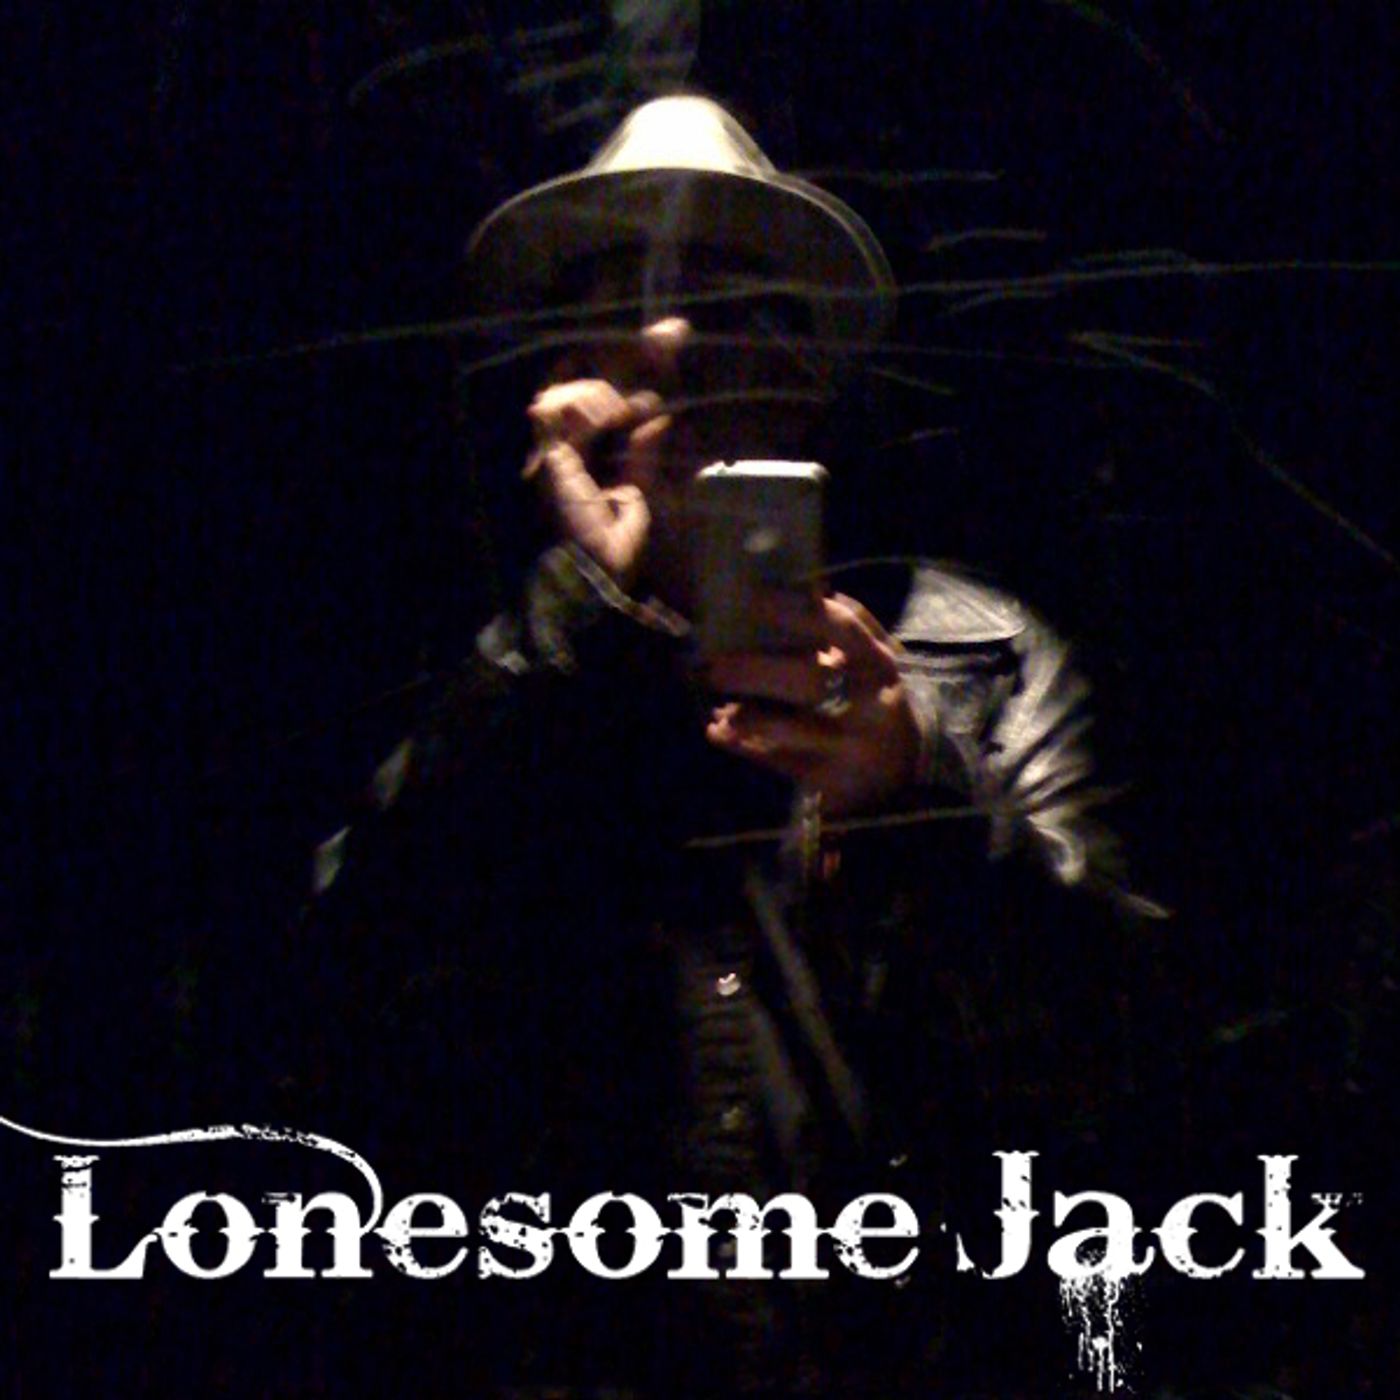 Lonesome Jack tracks